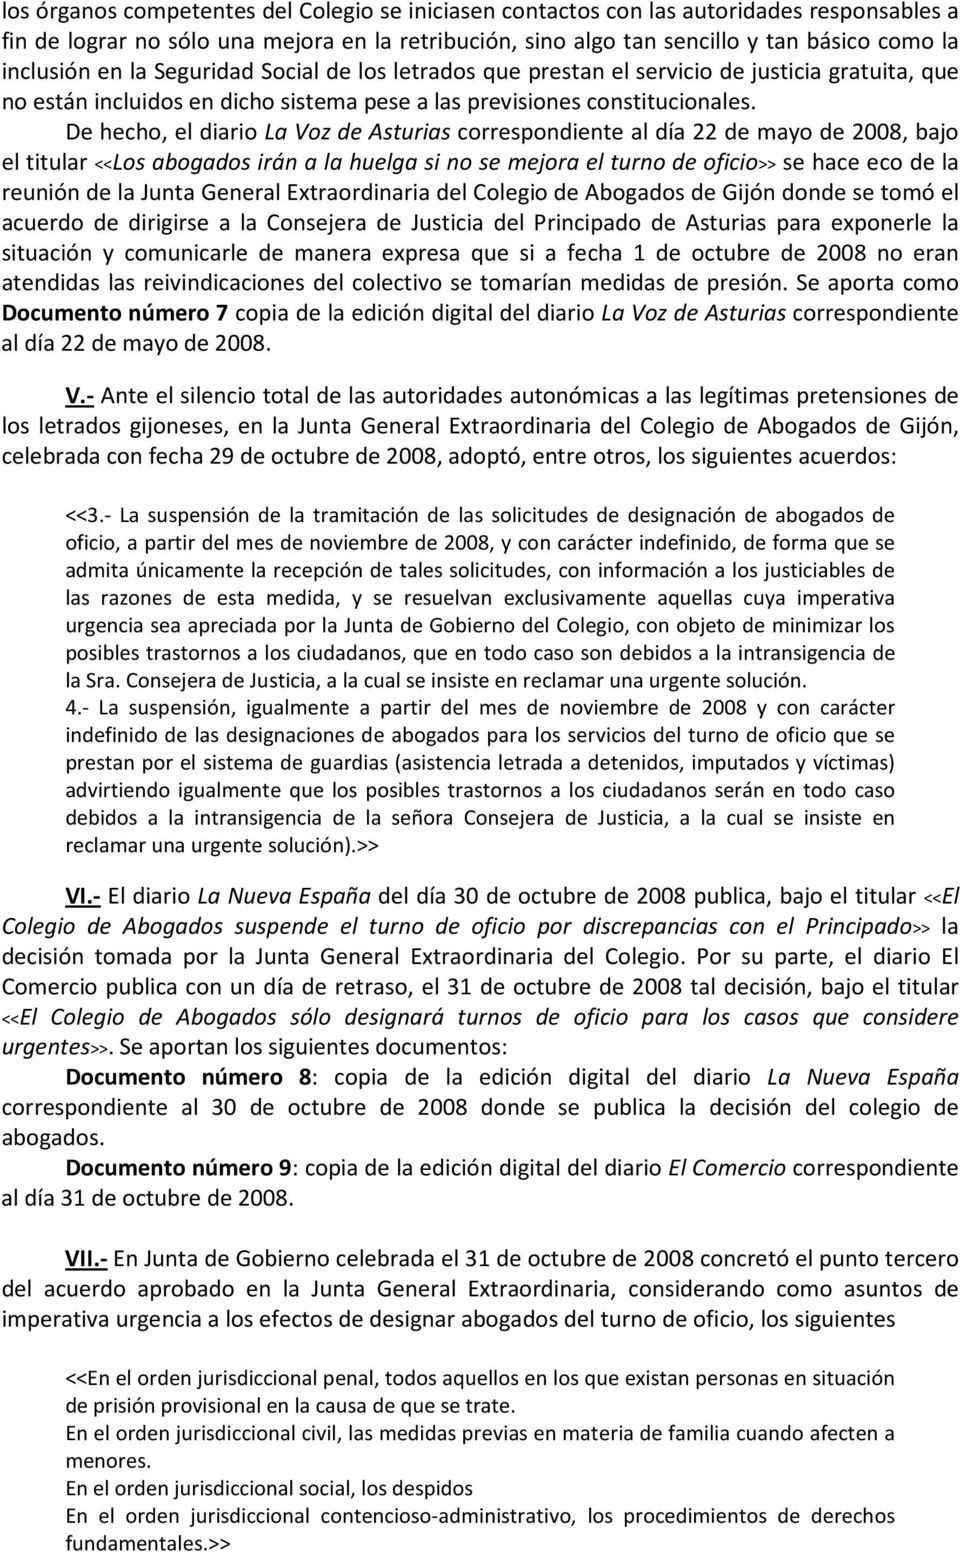 De hecho, el diario La Voz de Asturias correspondiente al día 22 de mayo de 2008, bajo el titular <<Los abogados irán a la huelga si no se mejora el turno de oficio>> se hace eco de la reunión de la